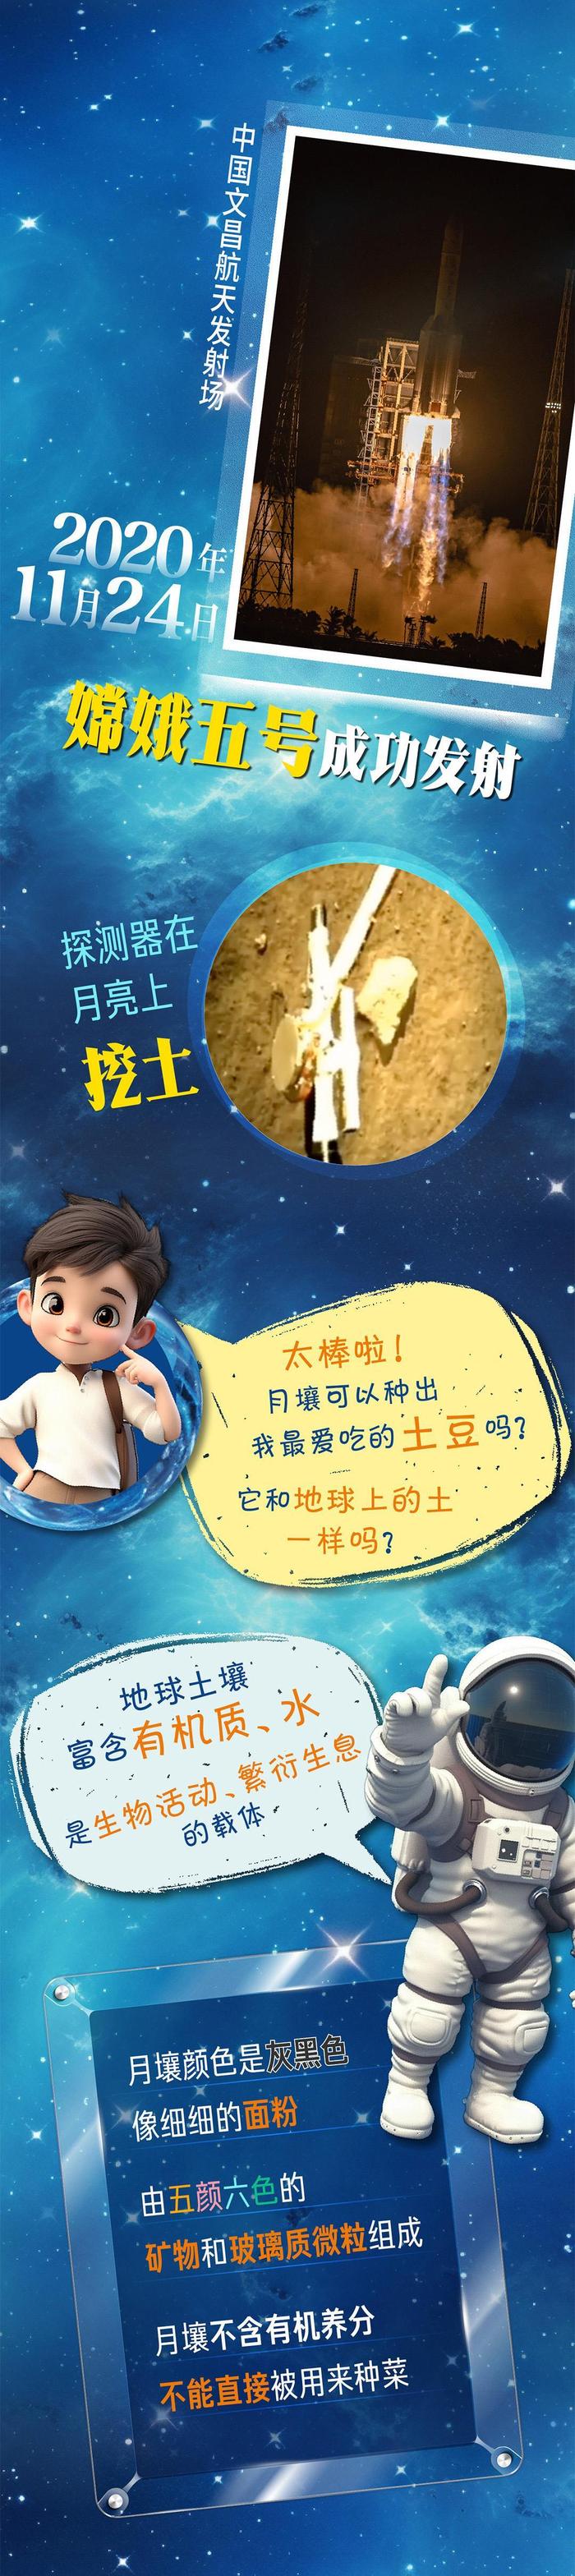 中国航天日丨创意长图：“嫦娥”揽月记